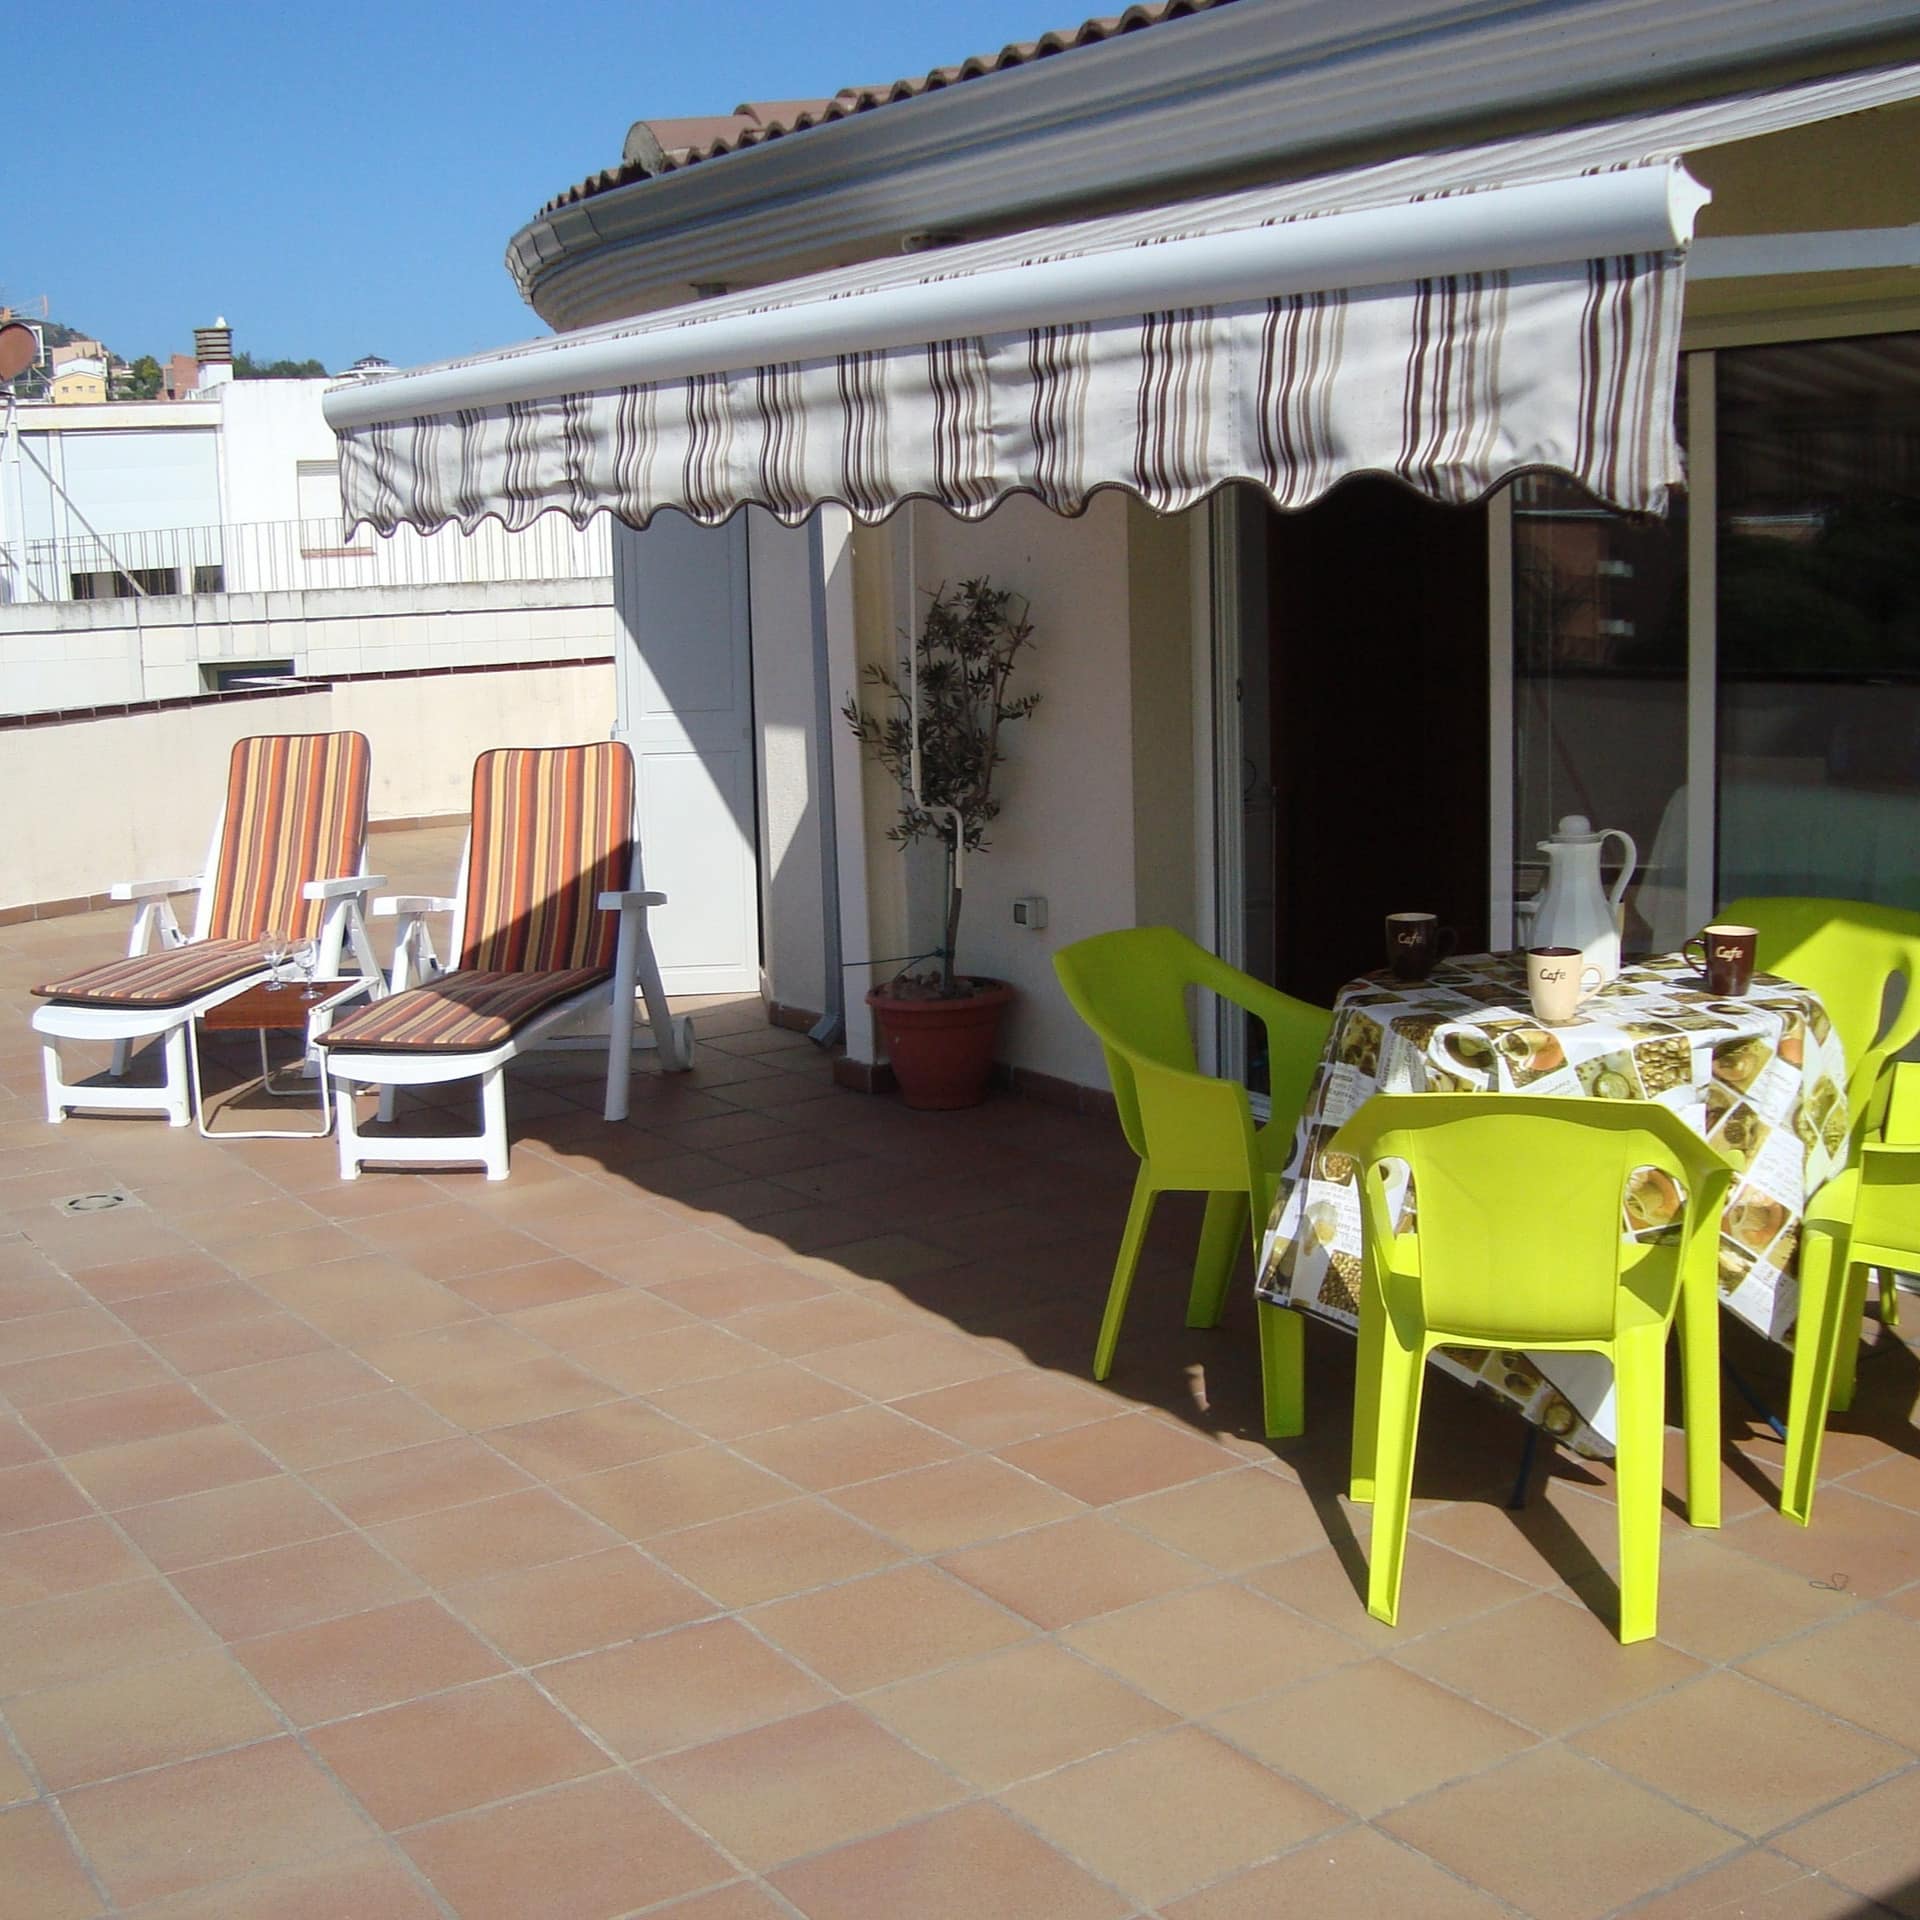 Ferienwohnung an der Costa Brava im Dachgeschoss mit großer Terrasse, darauf Tisch, Stühle und Liegen